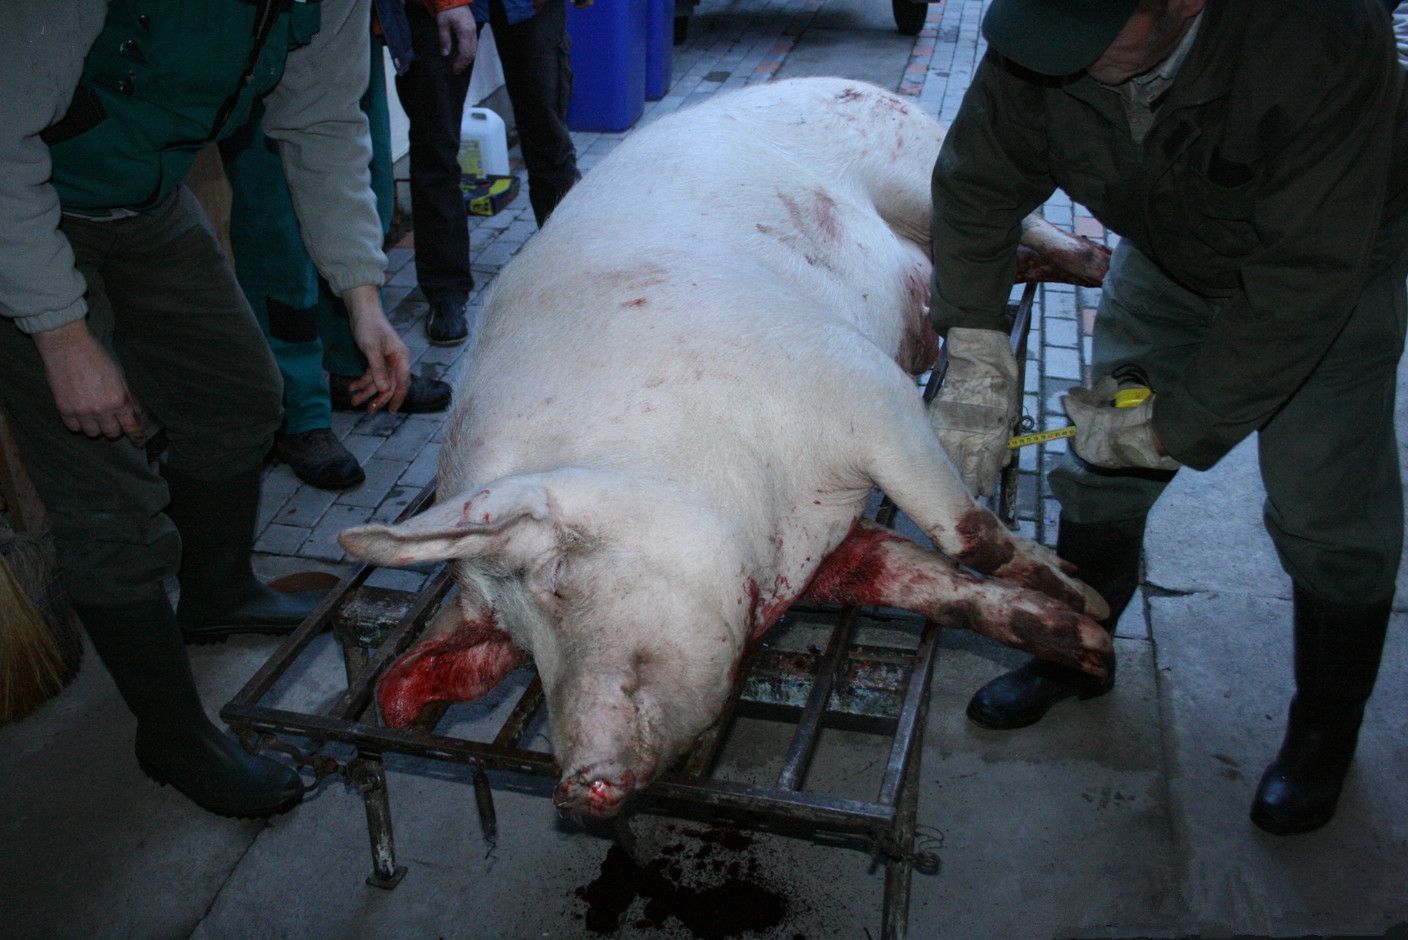 实拍老外与众不同的杀猪过程,近400斤胖猪一下子变成